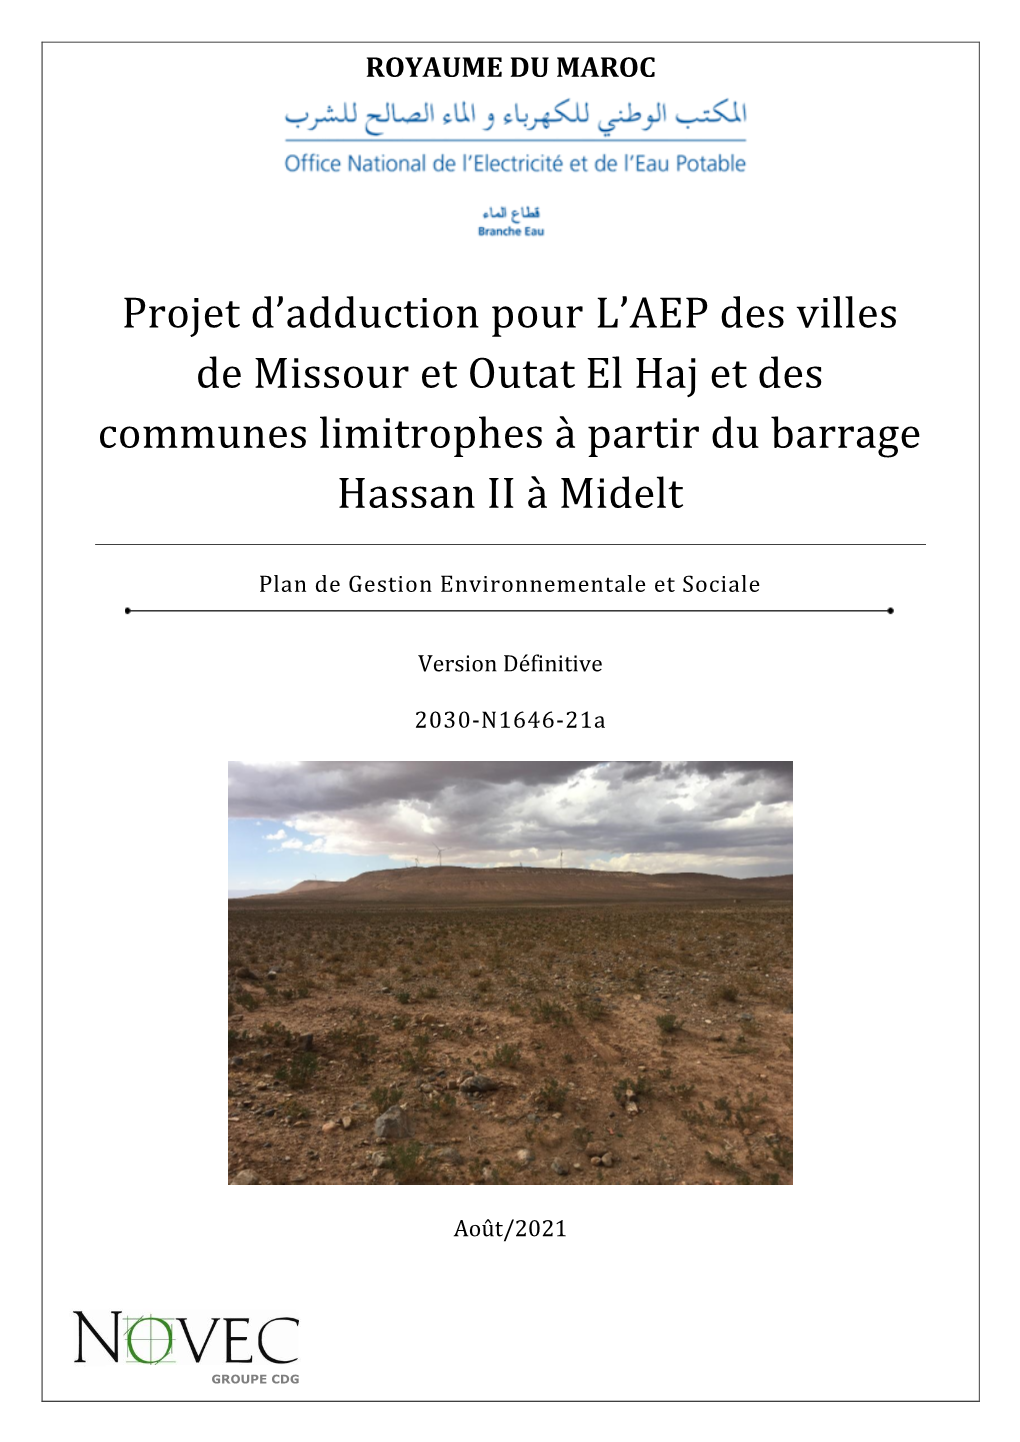 Projet D'adduction Pour L'aep Des Villes De Missour Et Outat El Haj Et